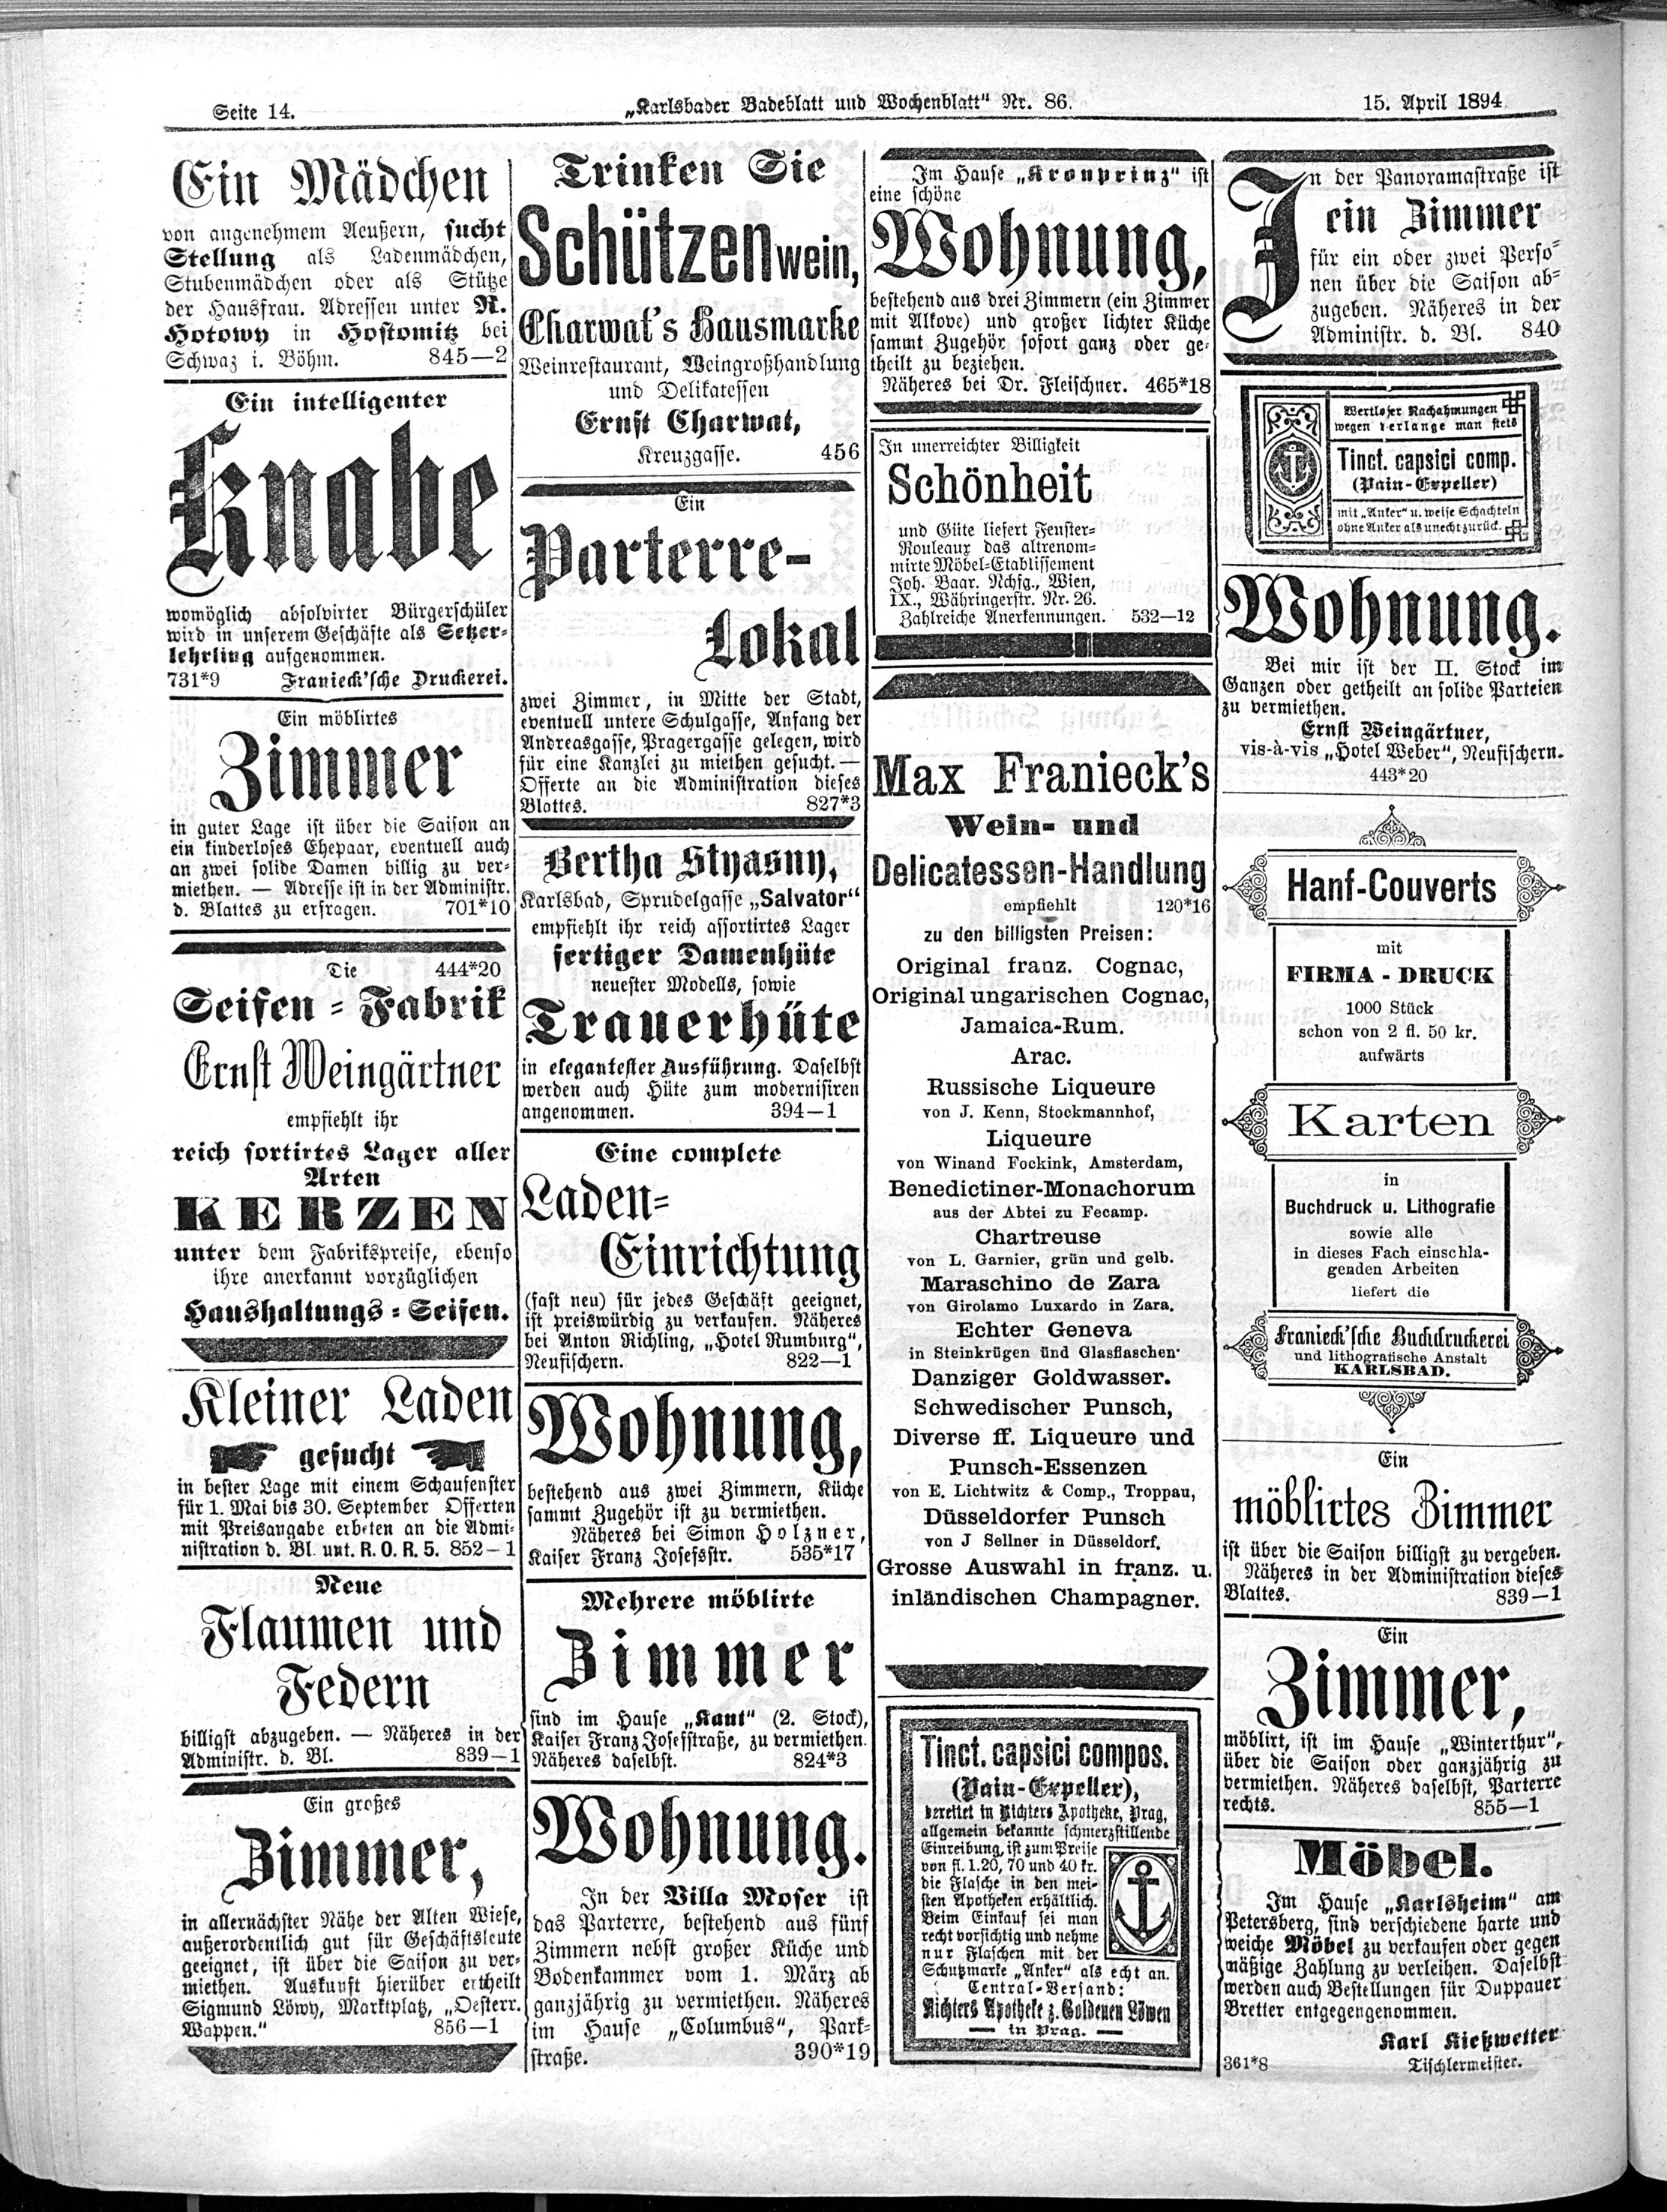 10. karlsbader-badeblatt-1894-04-15-n86_3550